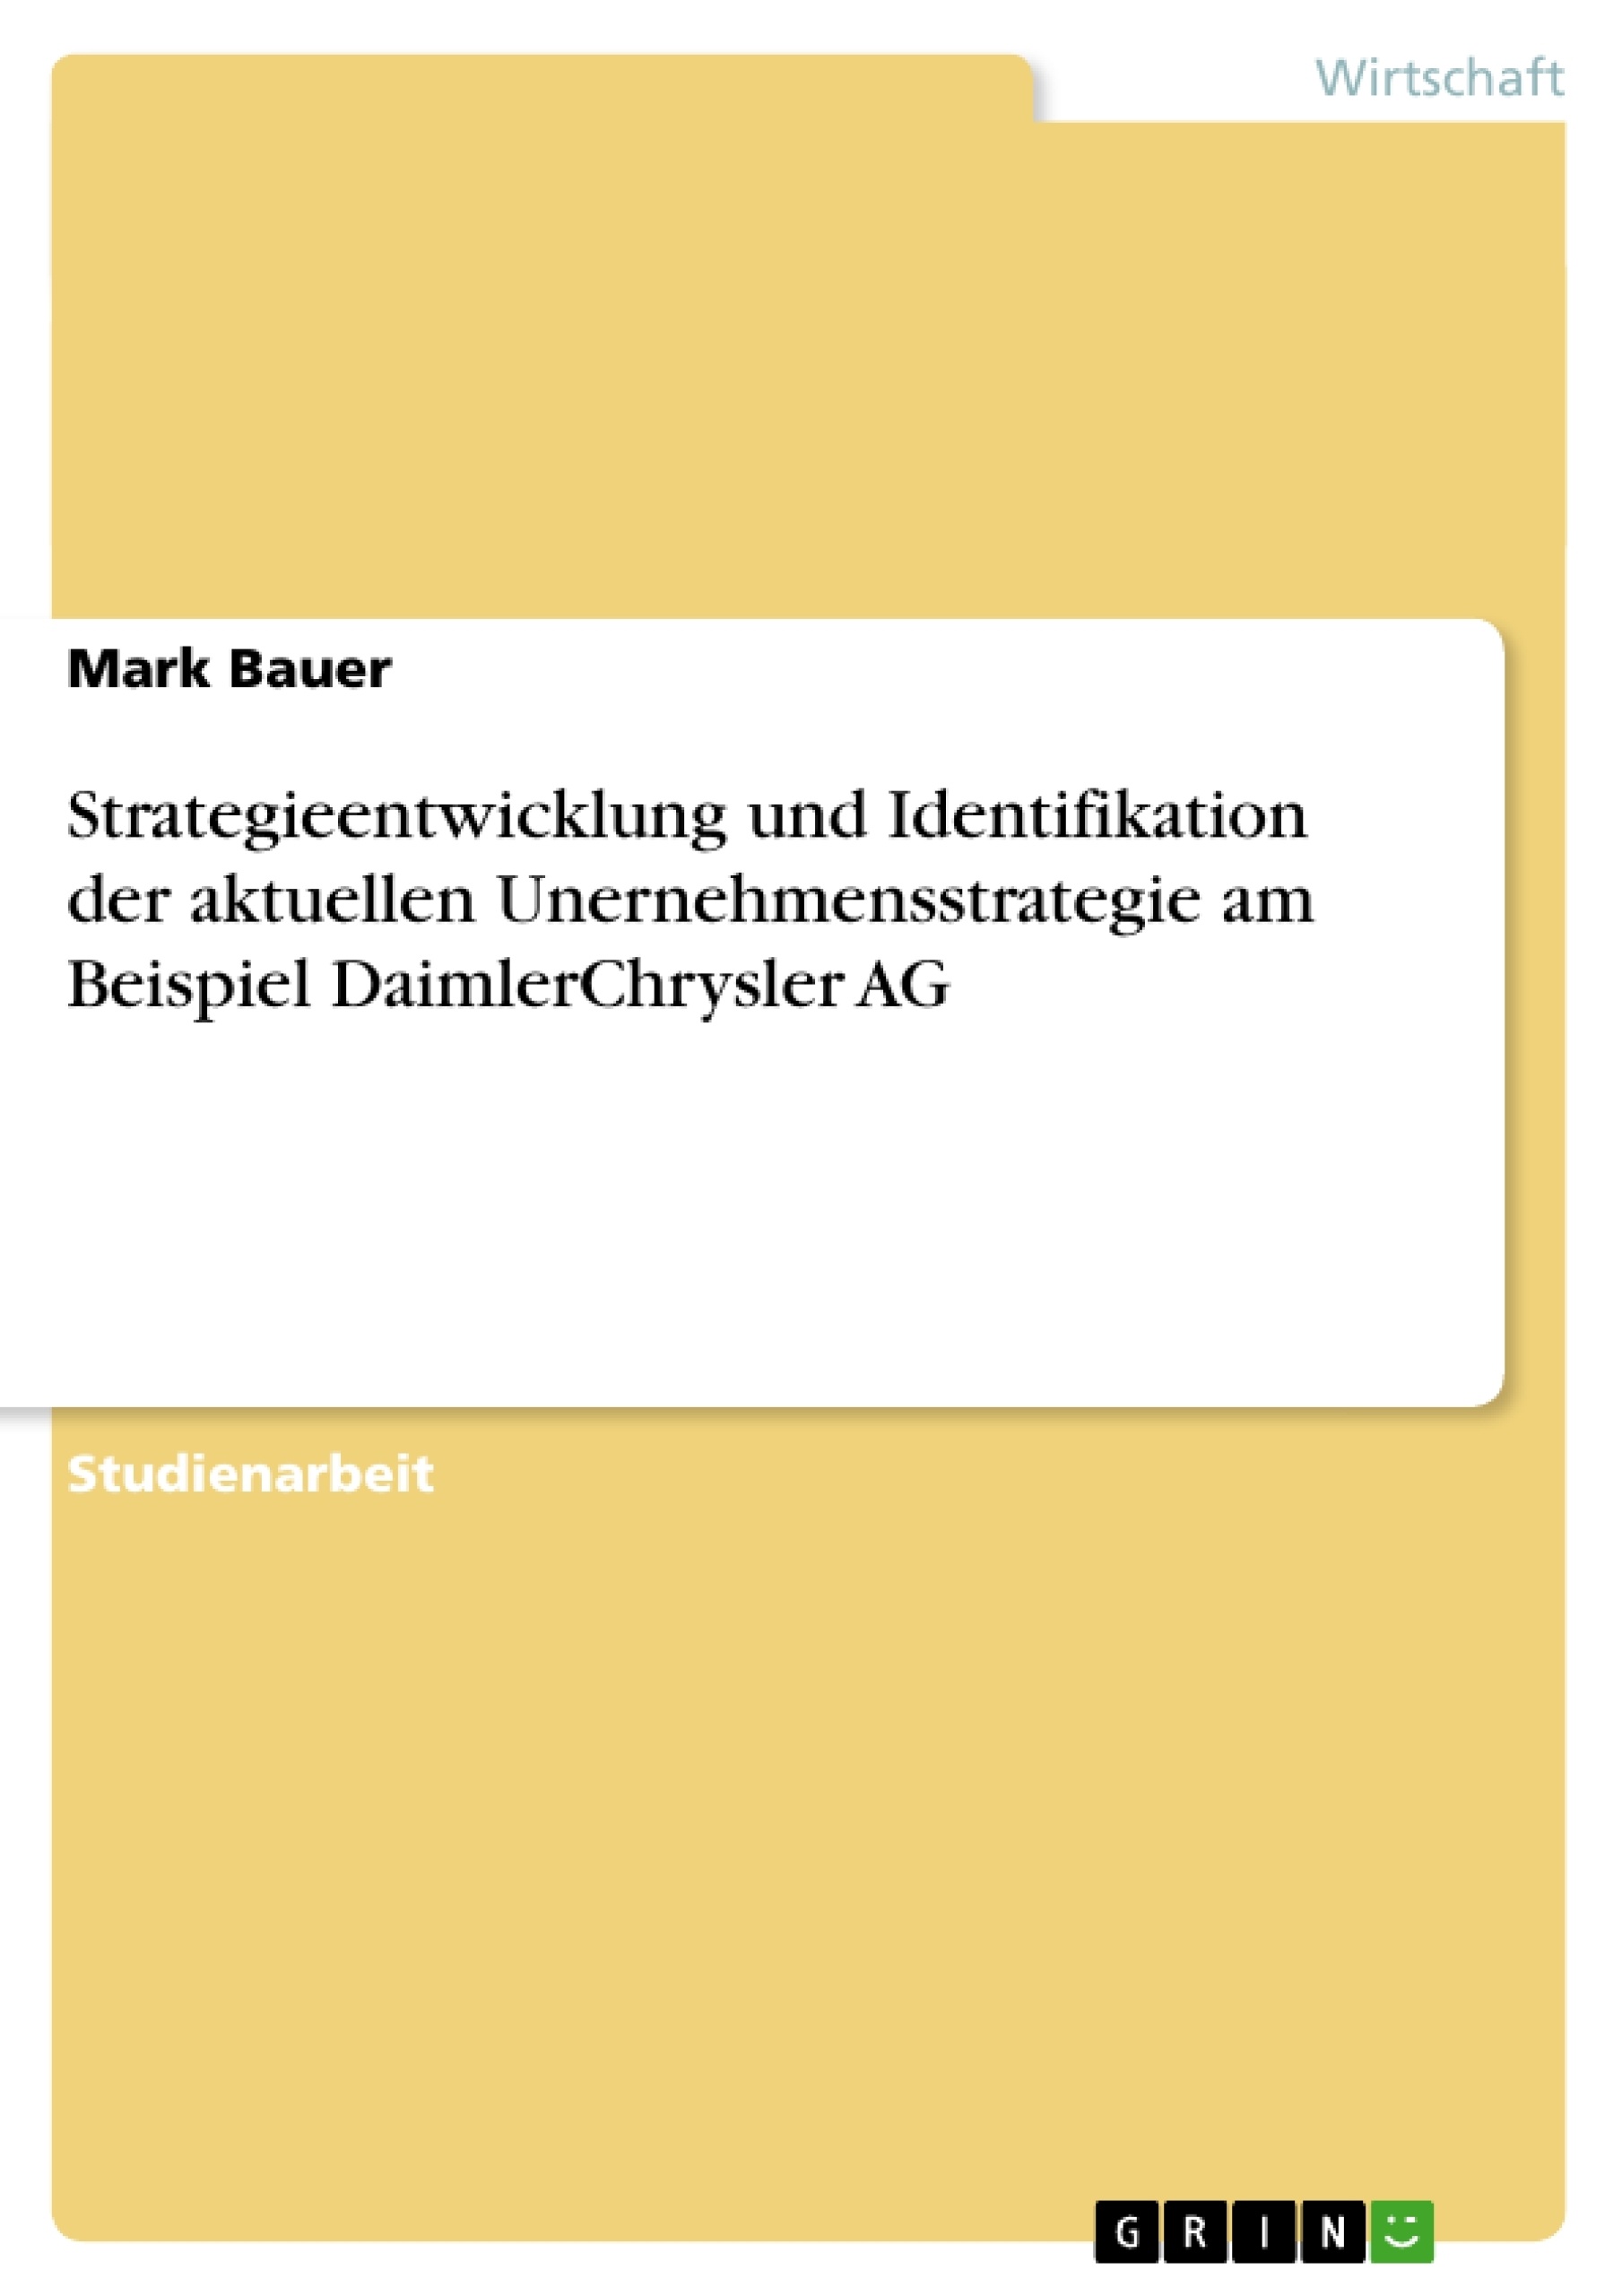 Titel: Strategieentwicklung und Identifikation der aktuellen Unernehmensstrategie am Beispiel DaimlerChrysler AG